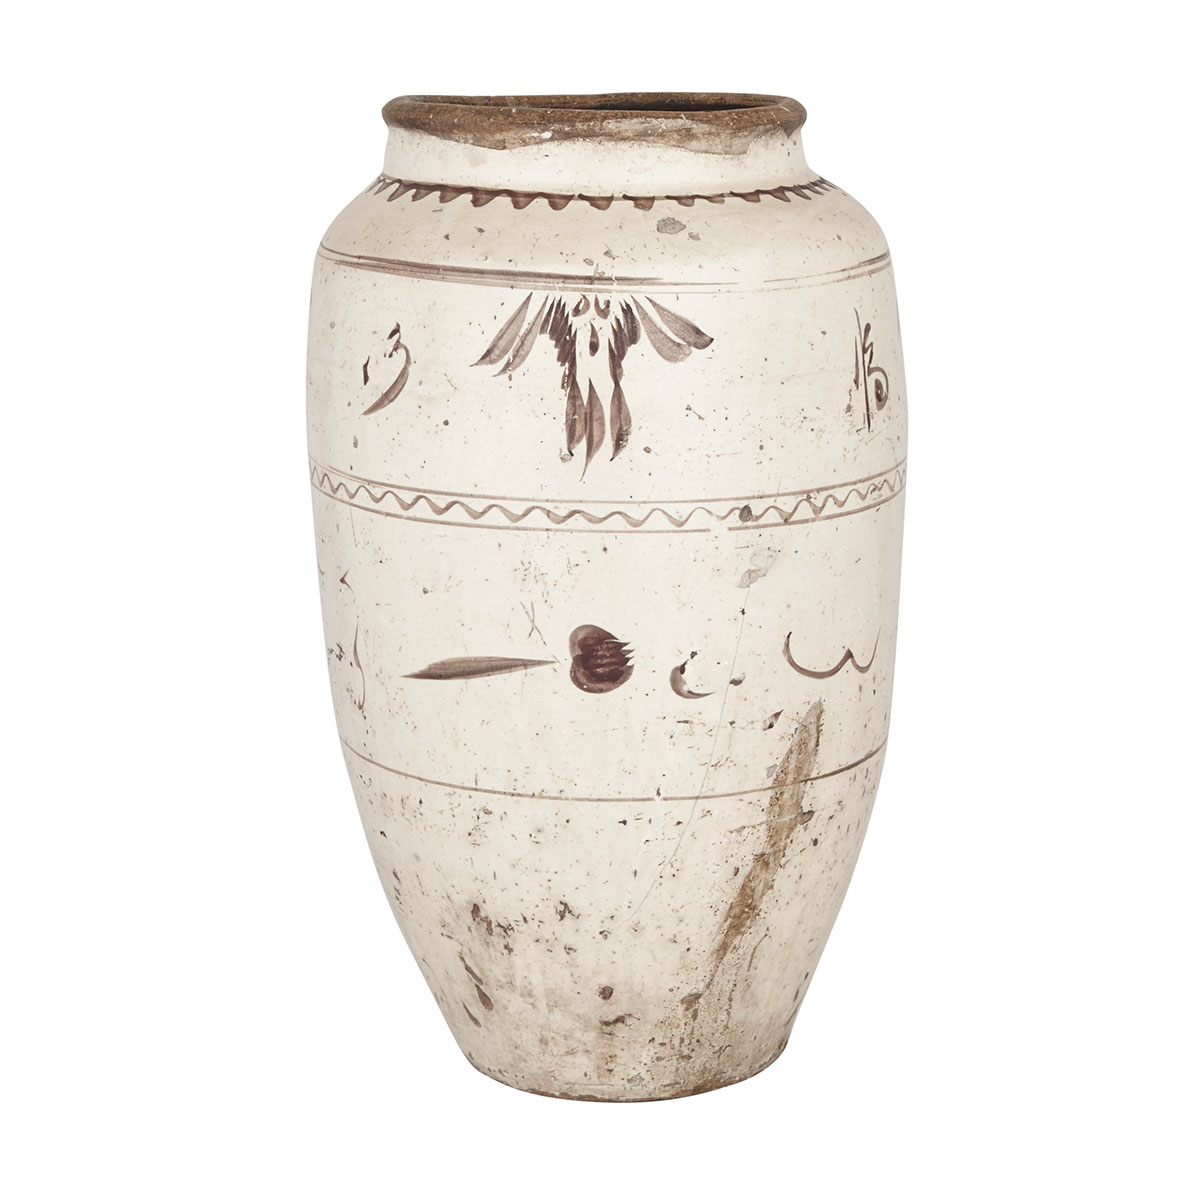 Cizhou Large Storage Jar, Yuan (1279-1368) or Ming Dynasty (1368-1644) 